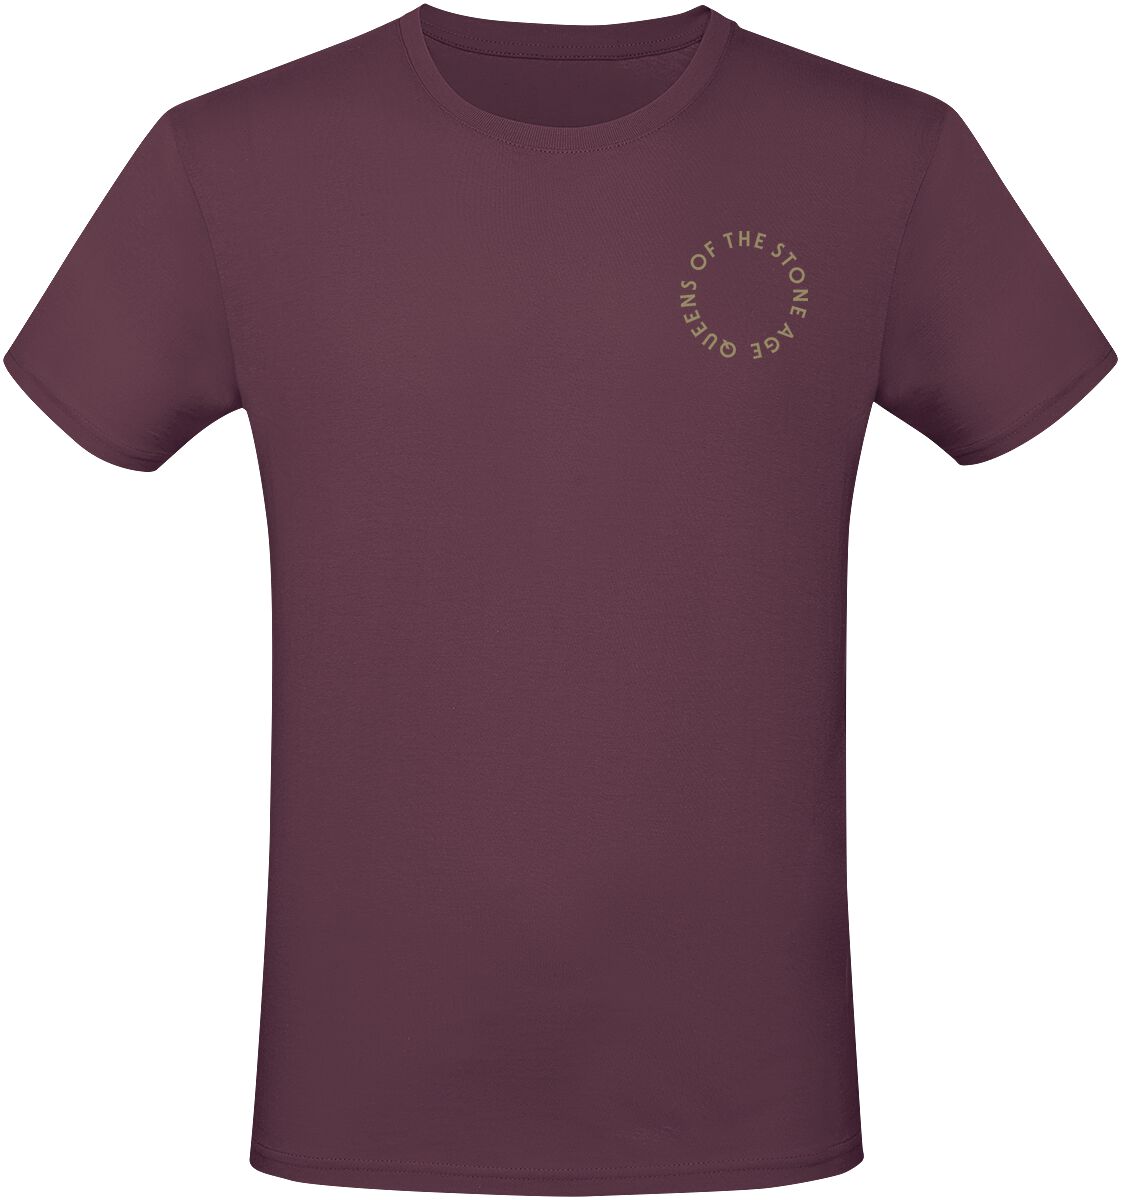 Queens Of The Stone Age T-Shirt - In Times New Roman - Snakes - S bis 3XL - für Männer - Größe XL - burgund  - Lizenziertes Merchandise!